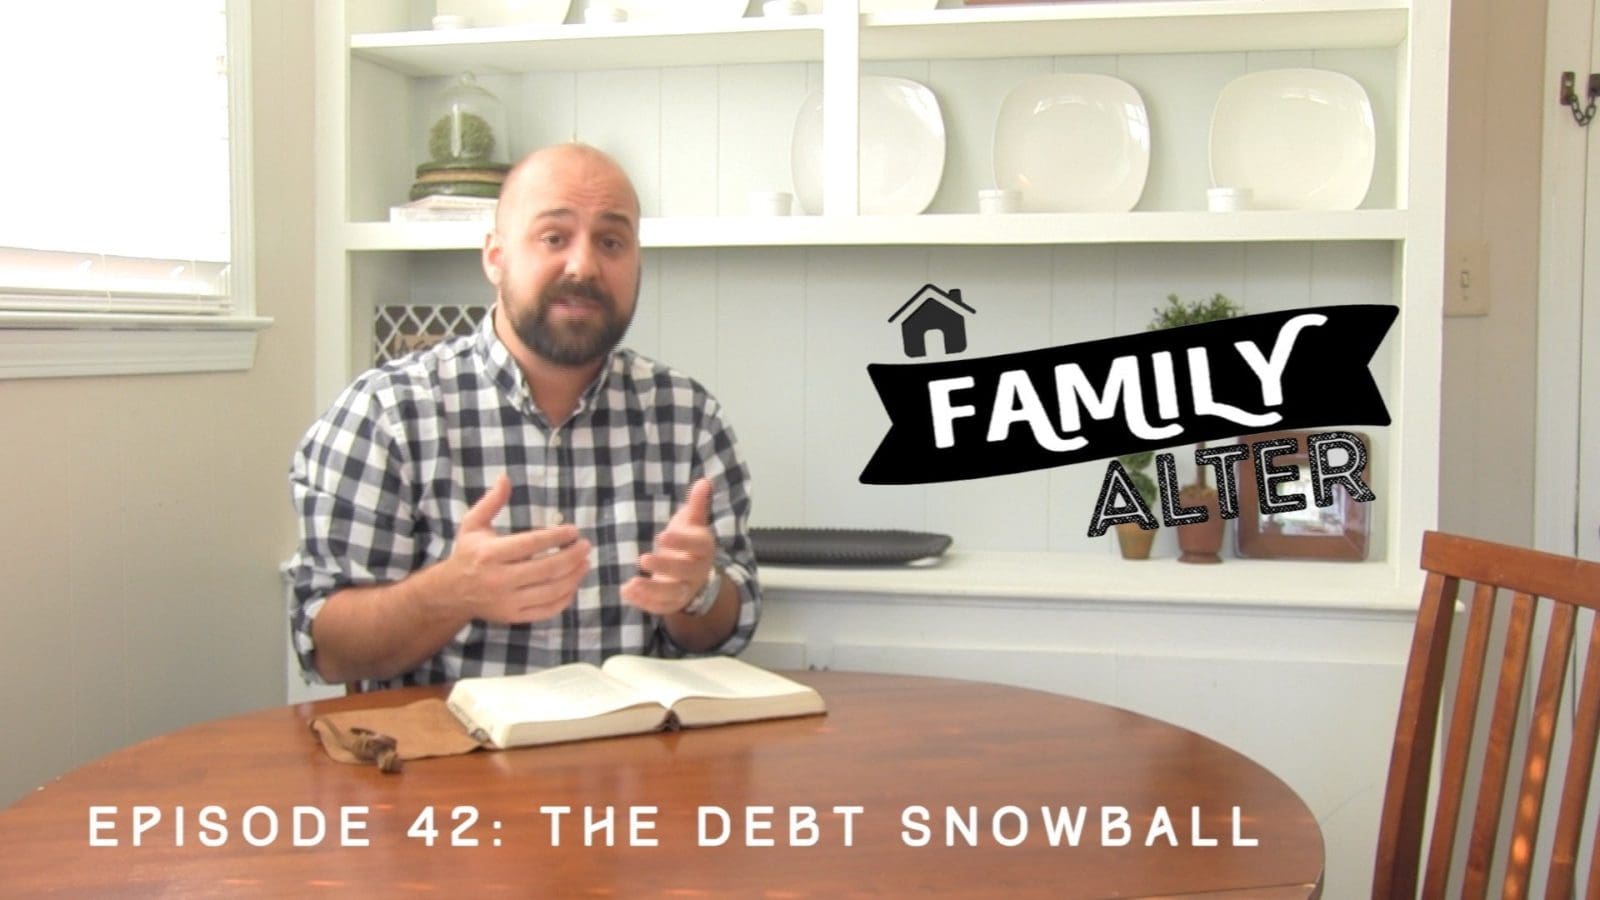 The Debt Snowball